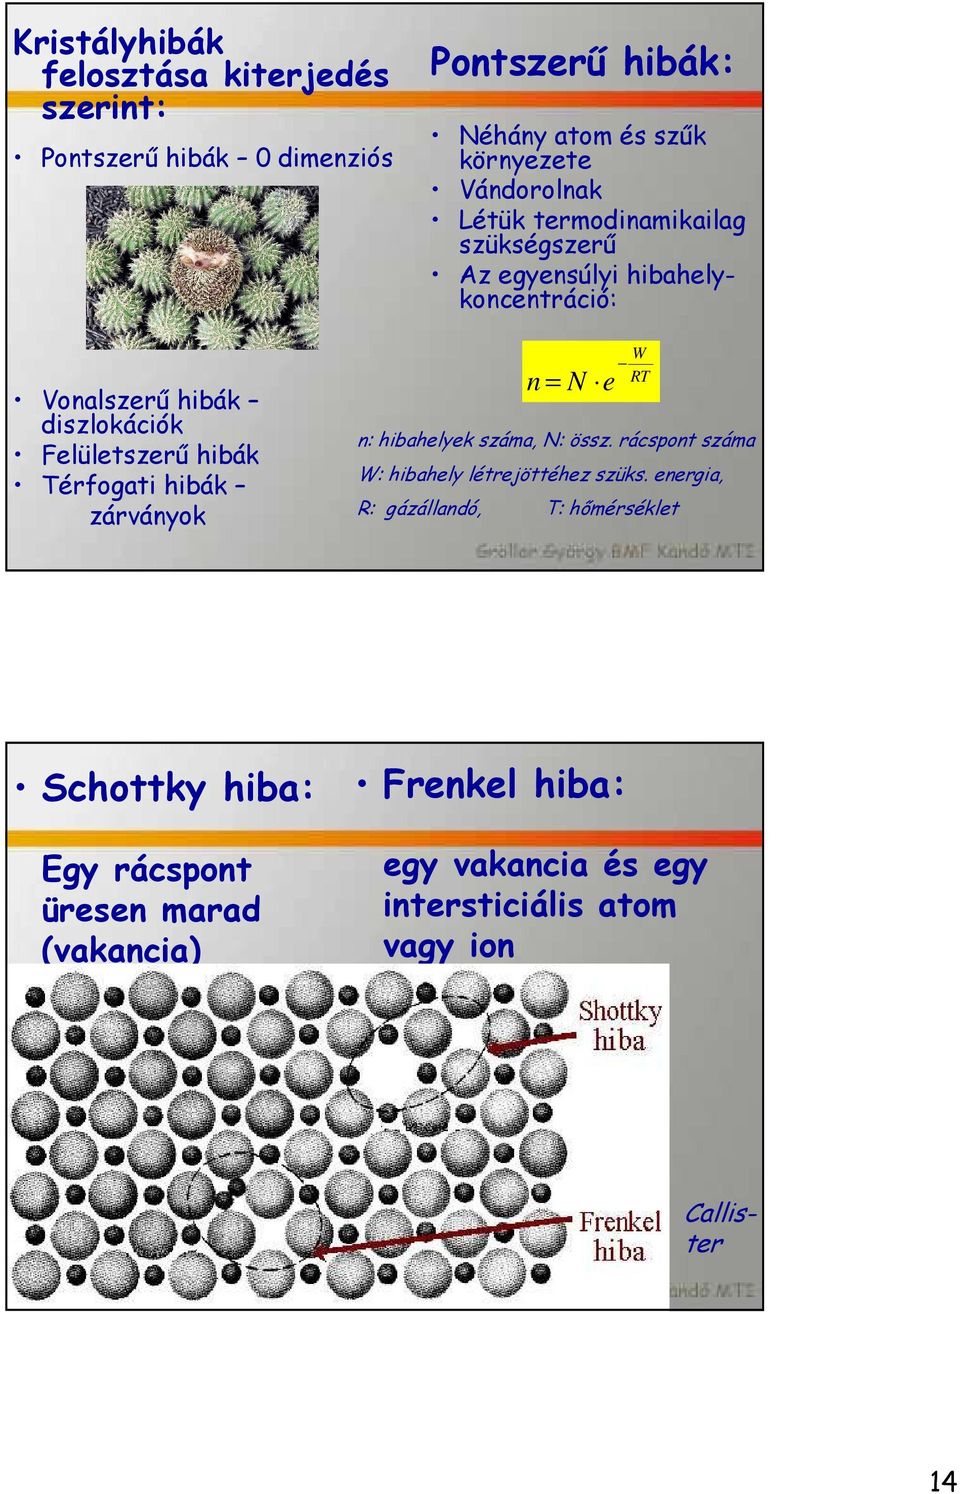 energia, R: gázállandó, T: hőmérséklet Schottky hiba: Egy rácspont üresen marad (vakancia) Frenkel hiba: egy vakancia és egy